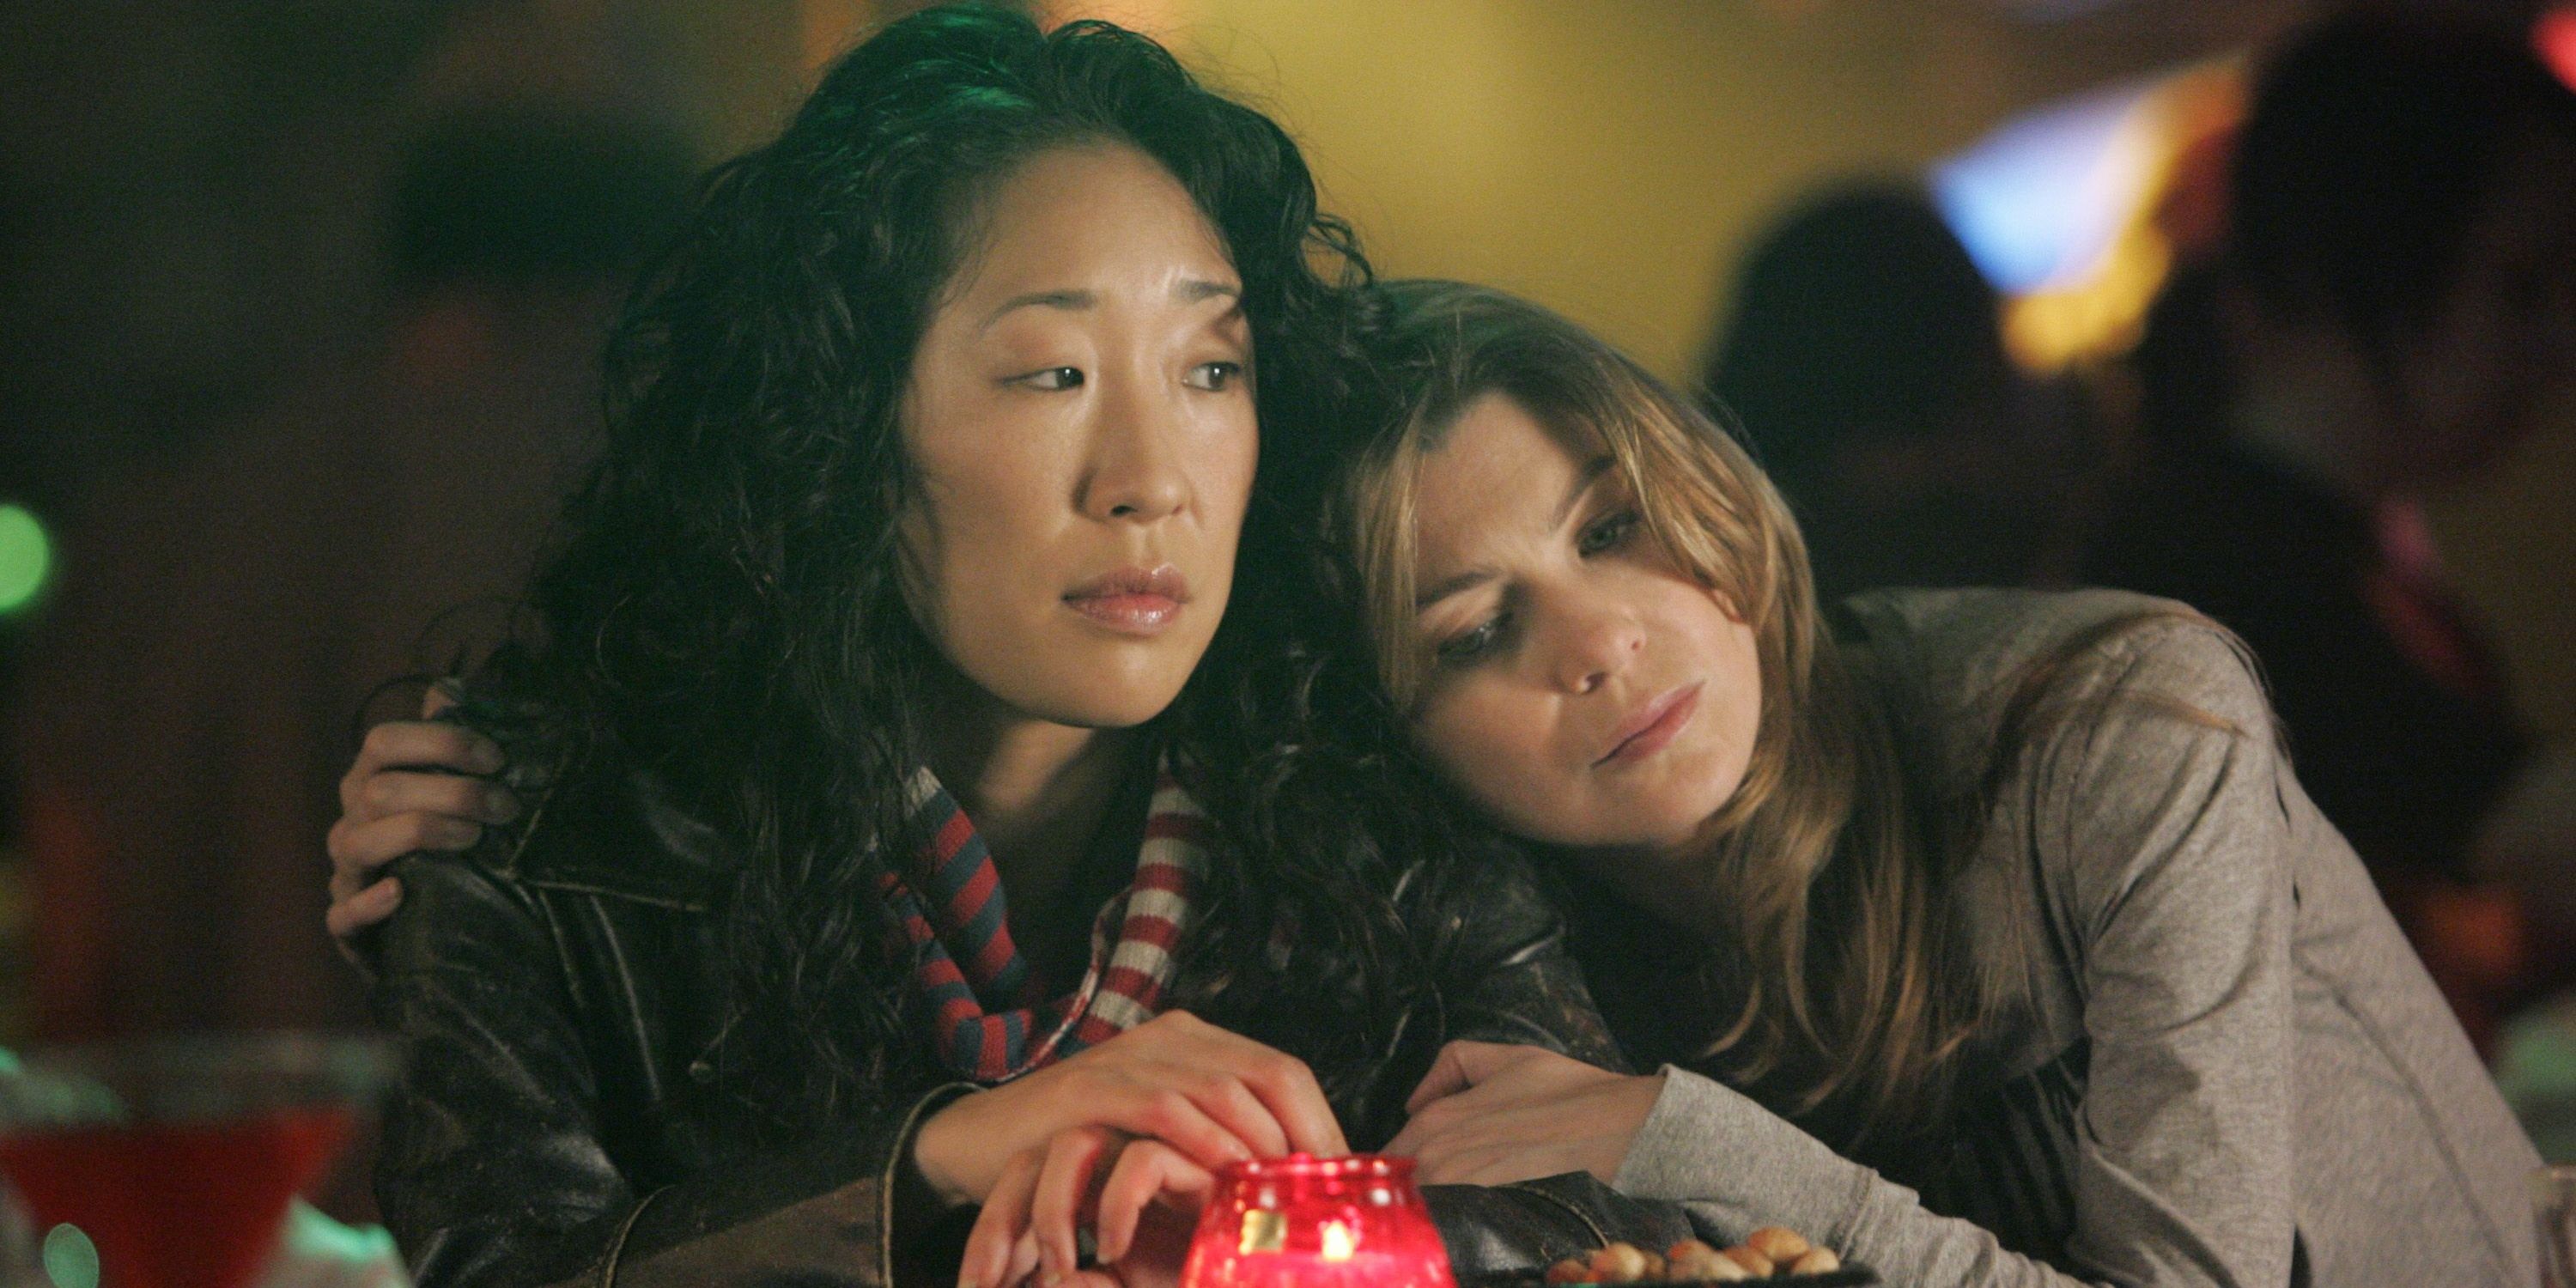 Meredith and Cristina at Joe's Bar in Grey's Anatomy